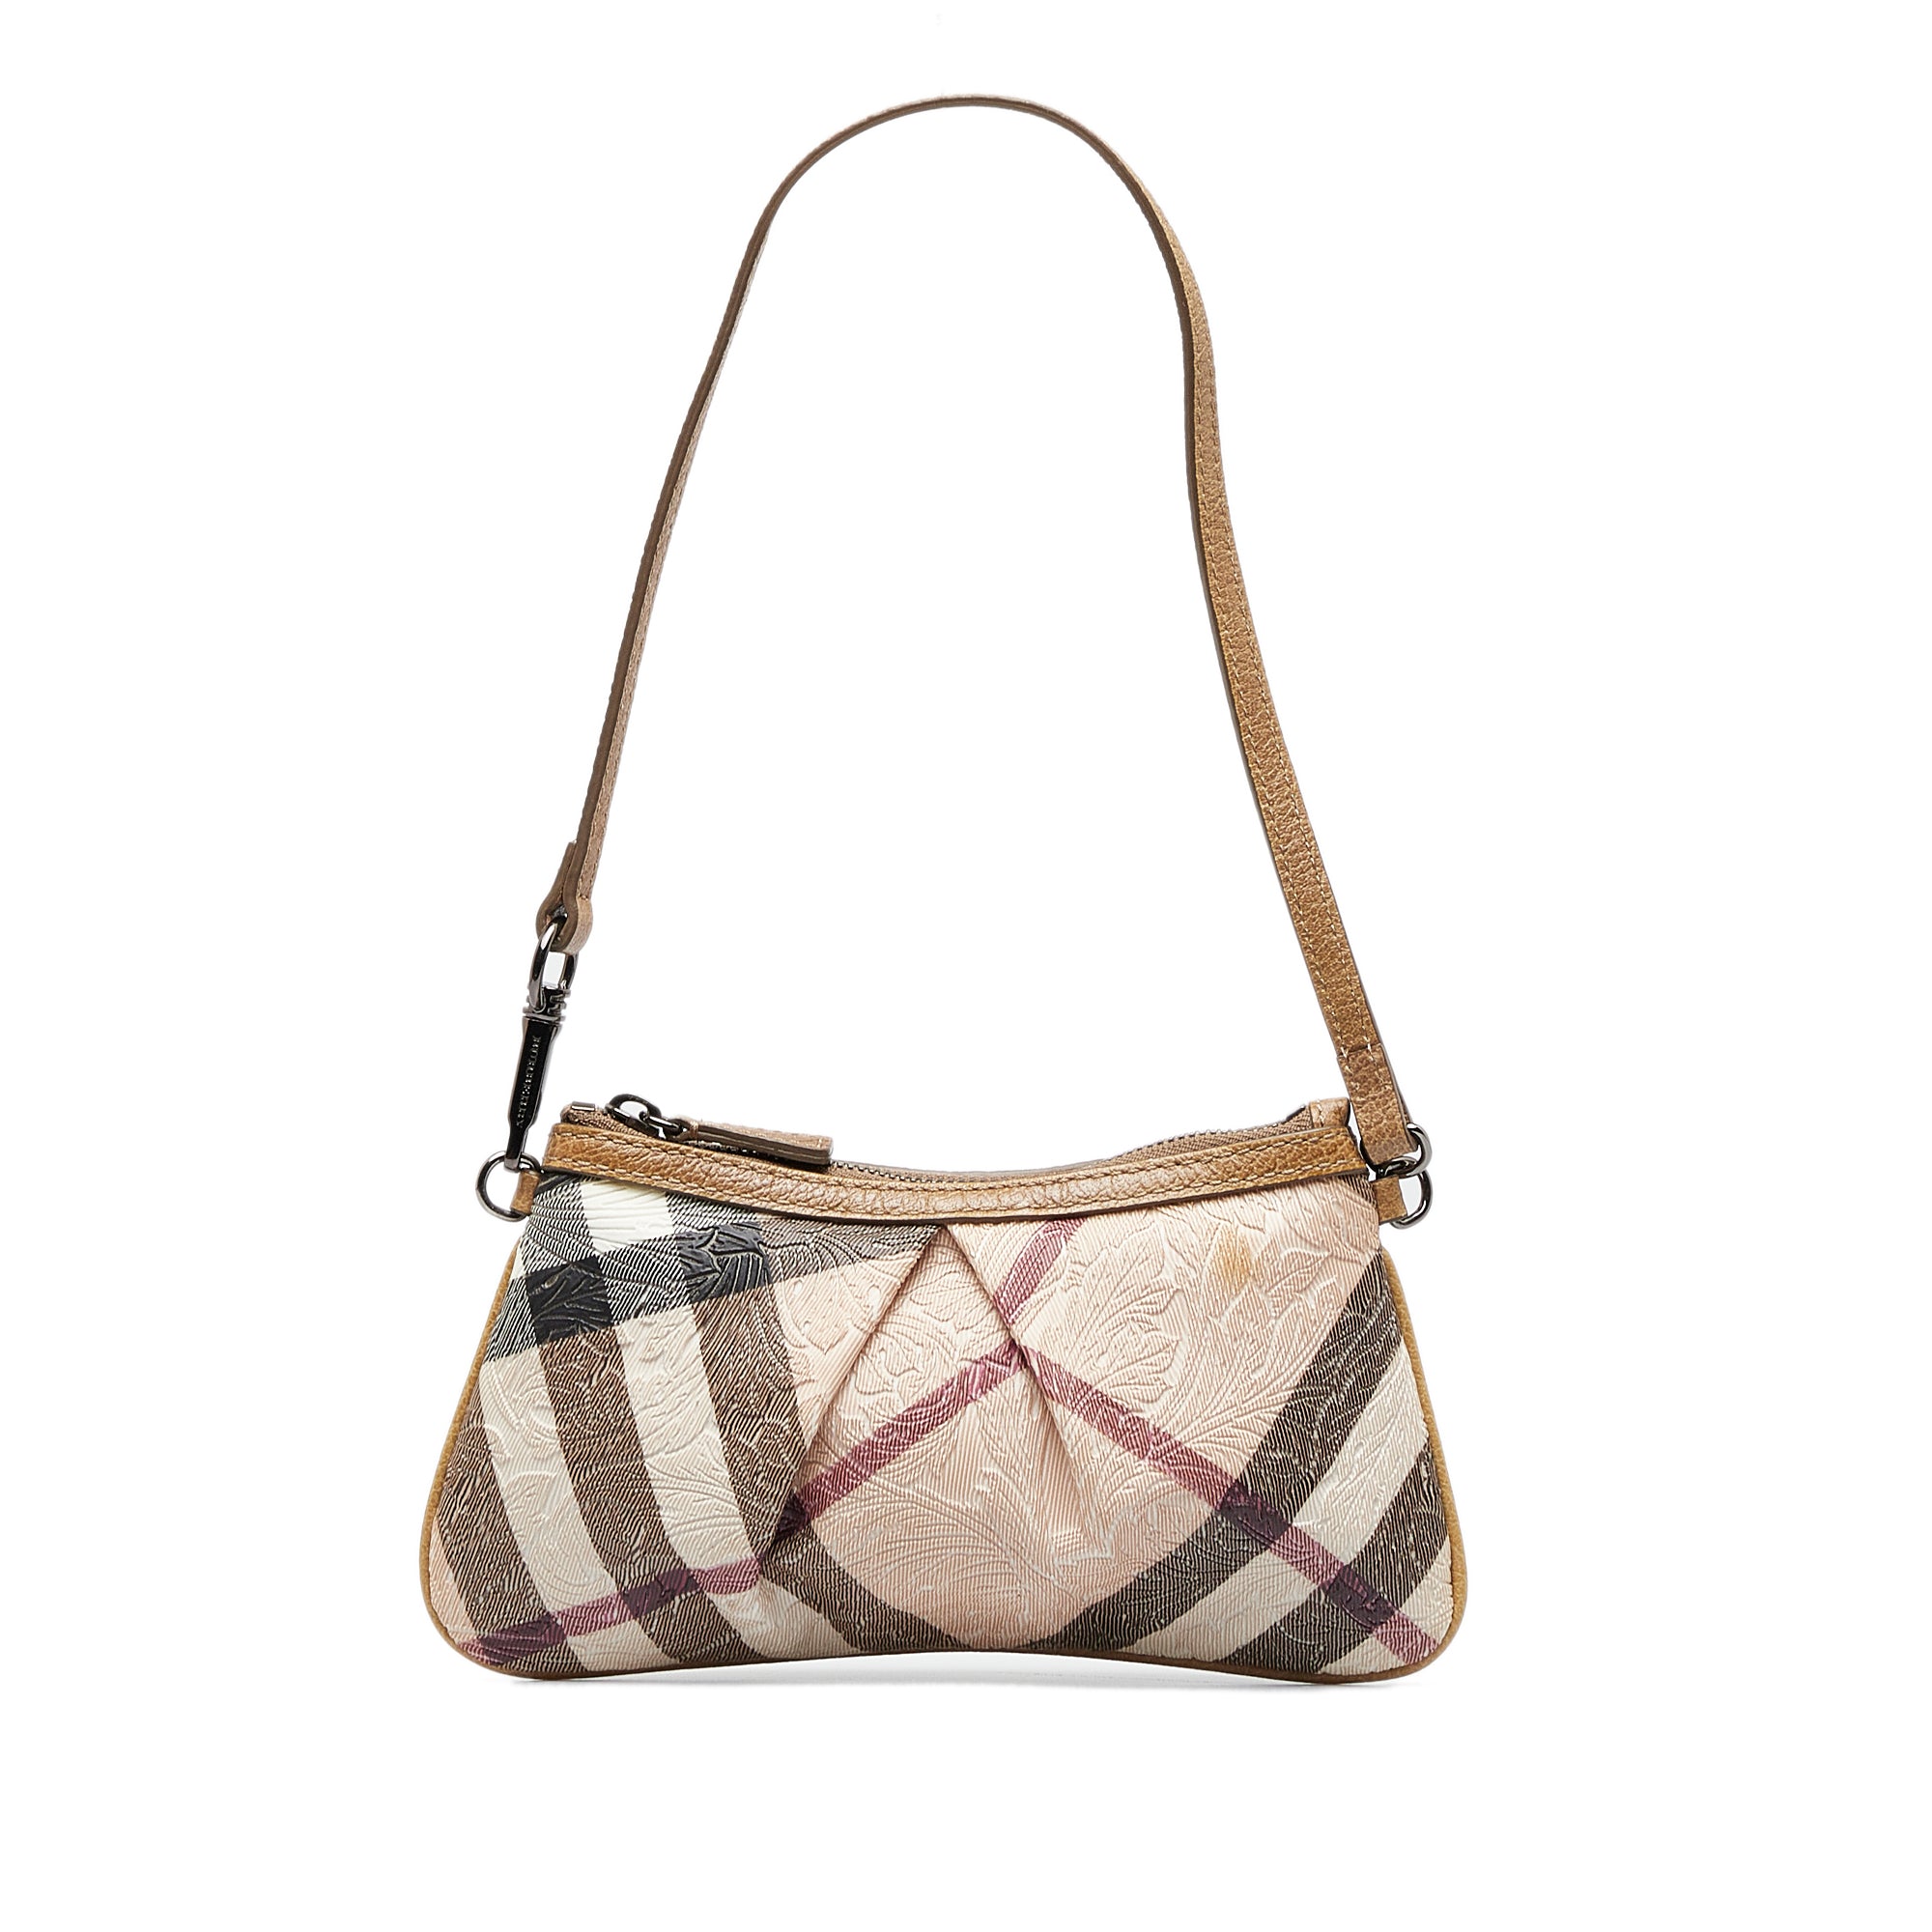 Burberry Women's Nova Check Handbag